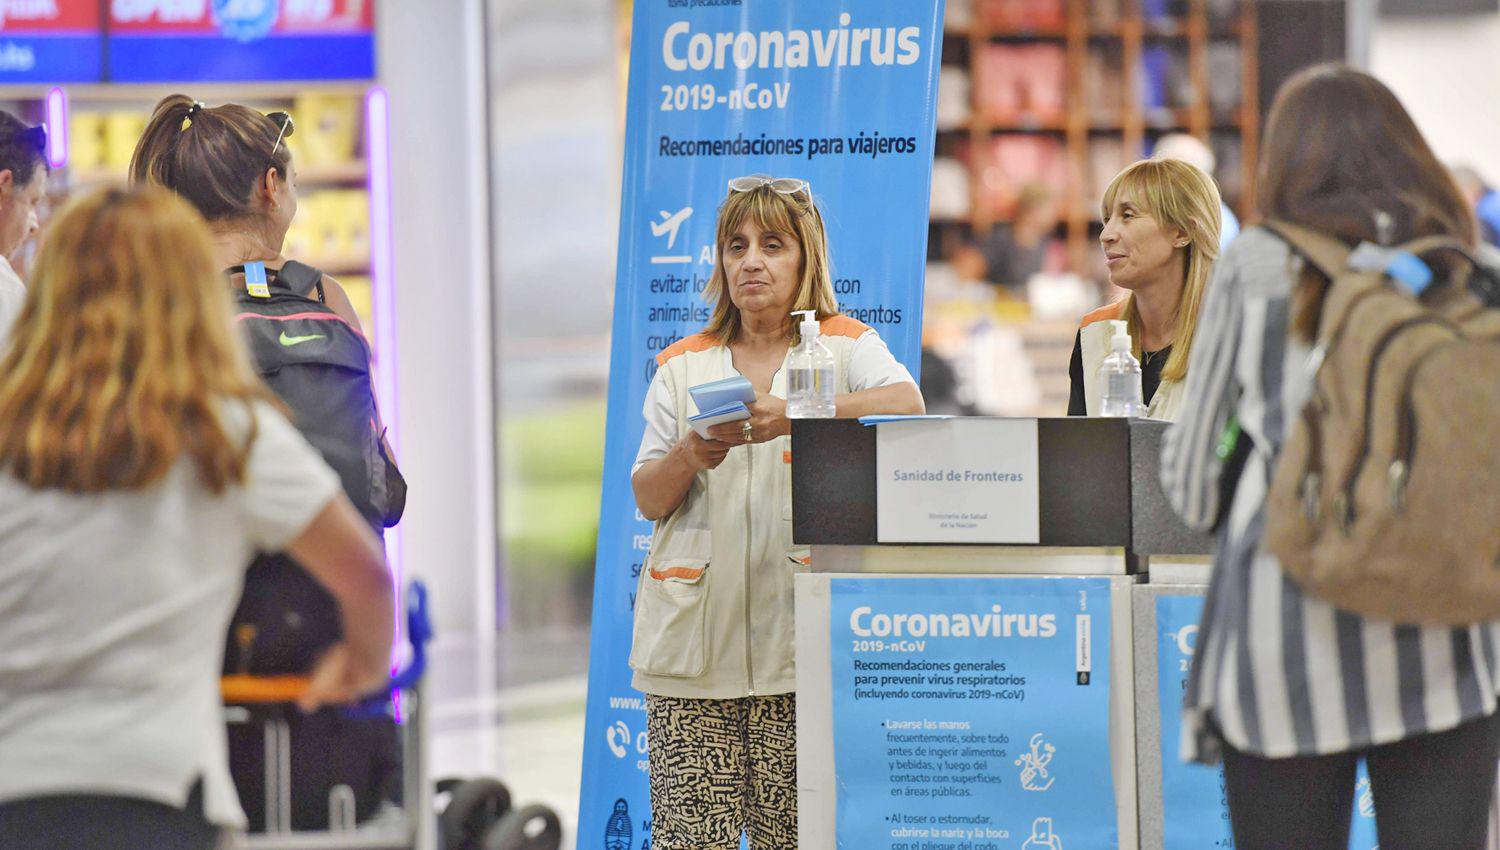 El coronavirus ya se instaloacute en el paiacutes y crece la alarma en toda la poblacioacuten